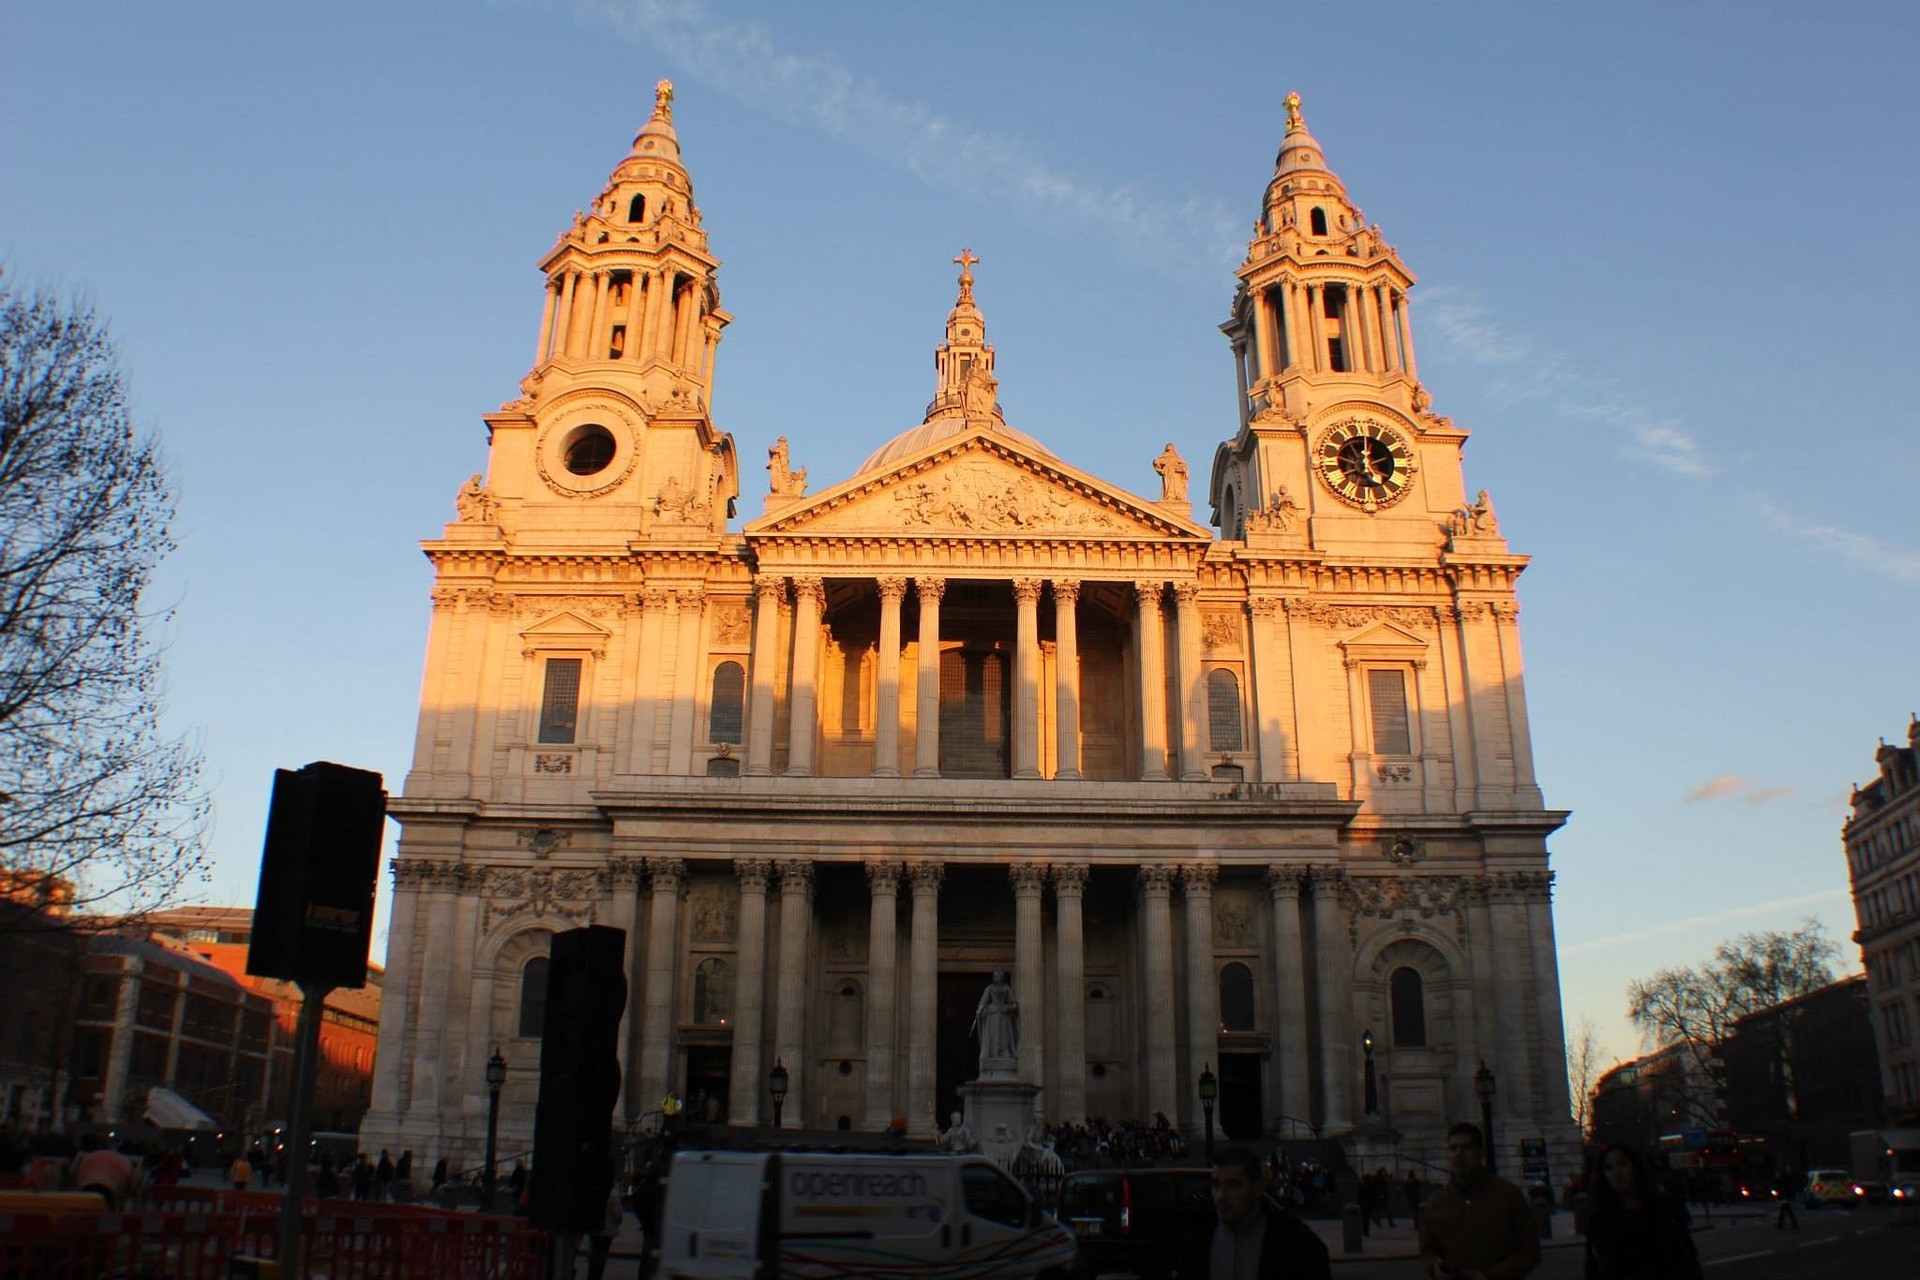 St. Paul's Cathedral, Londra: Aperta tutto l’anno